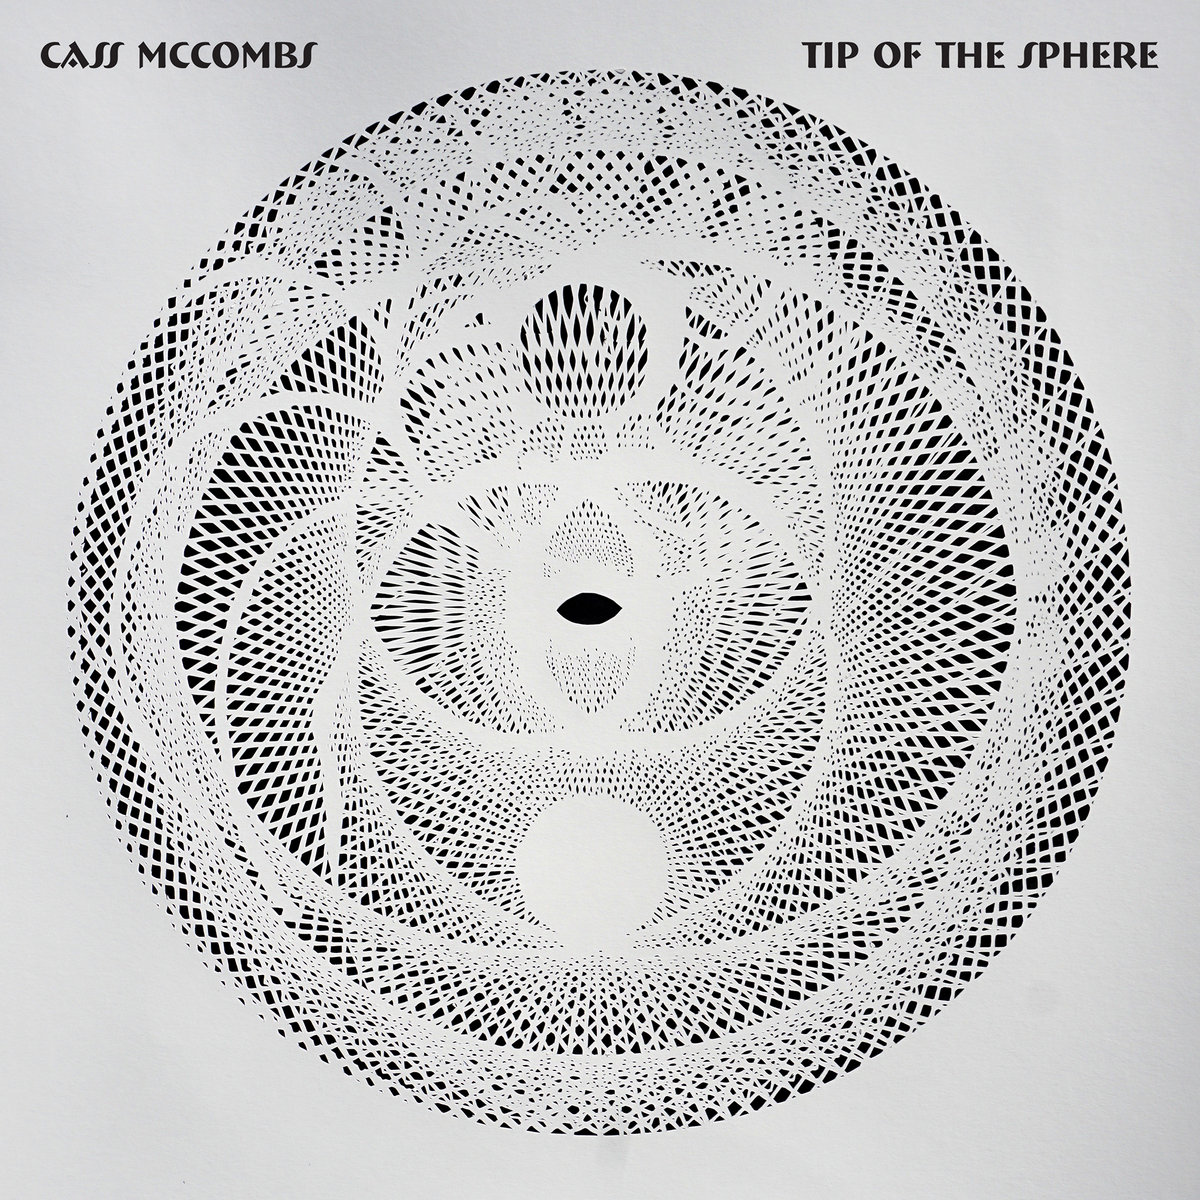 Cass McCombs - Tip of the Sphere - Melhores Álbuns de 2019